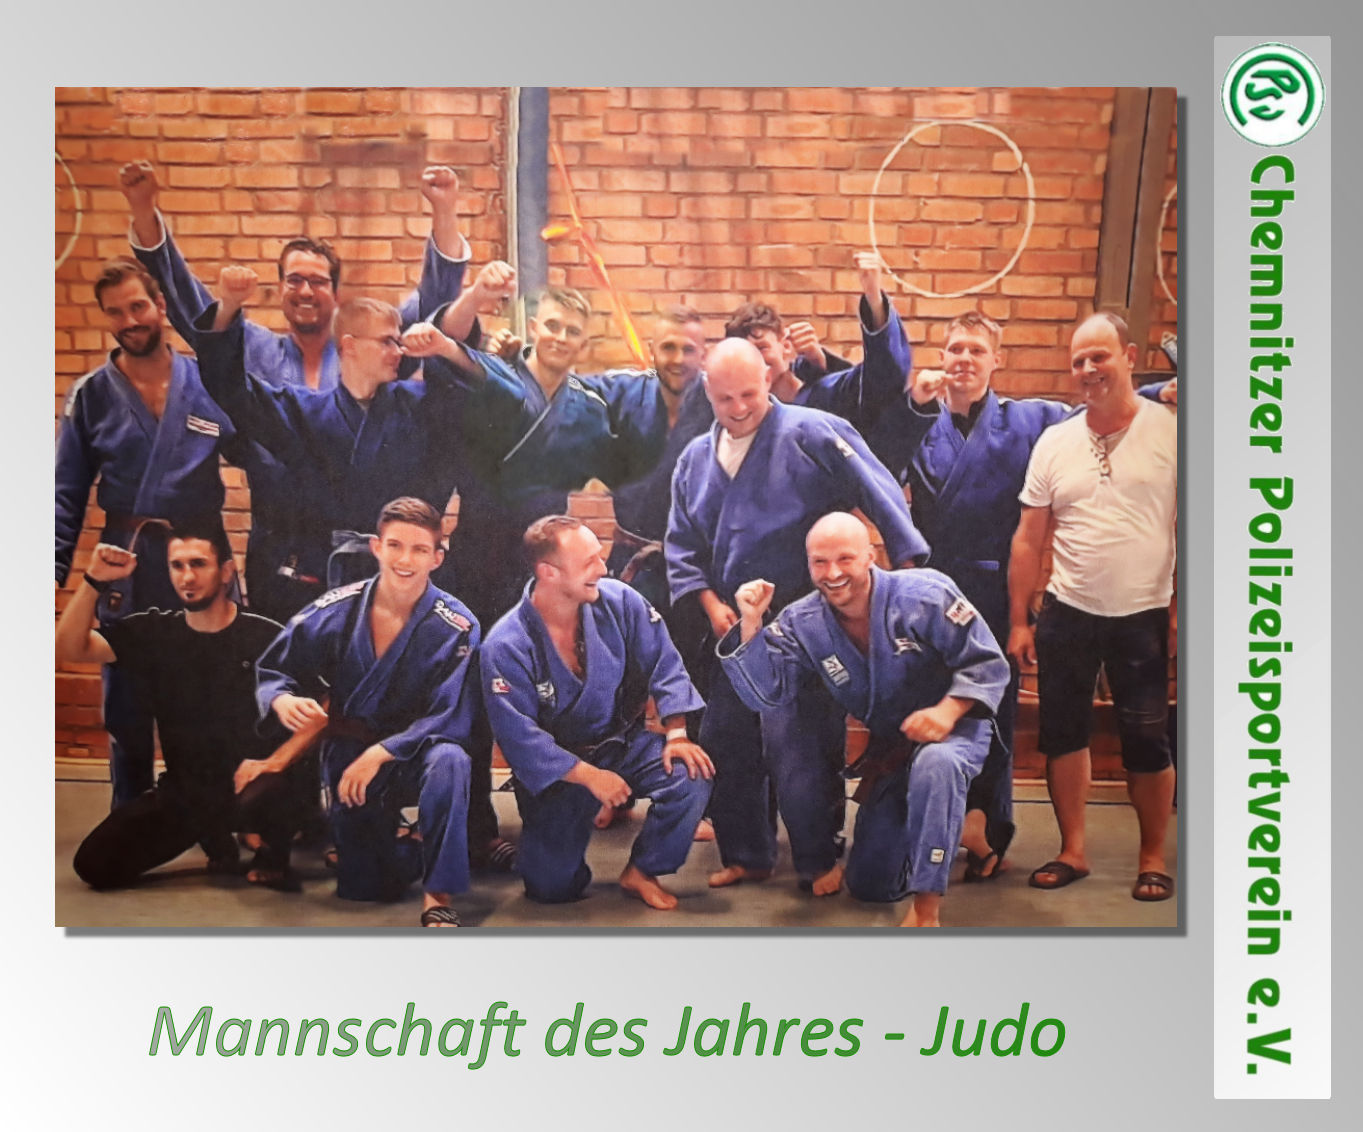 Mannschaft des Jahres Judo